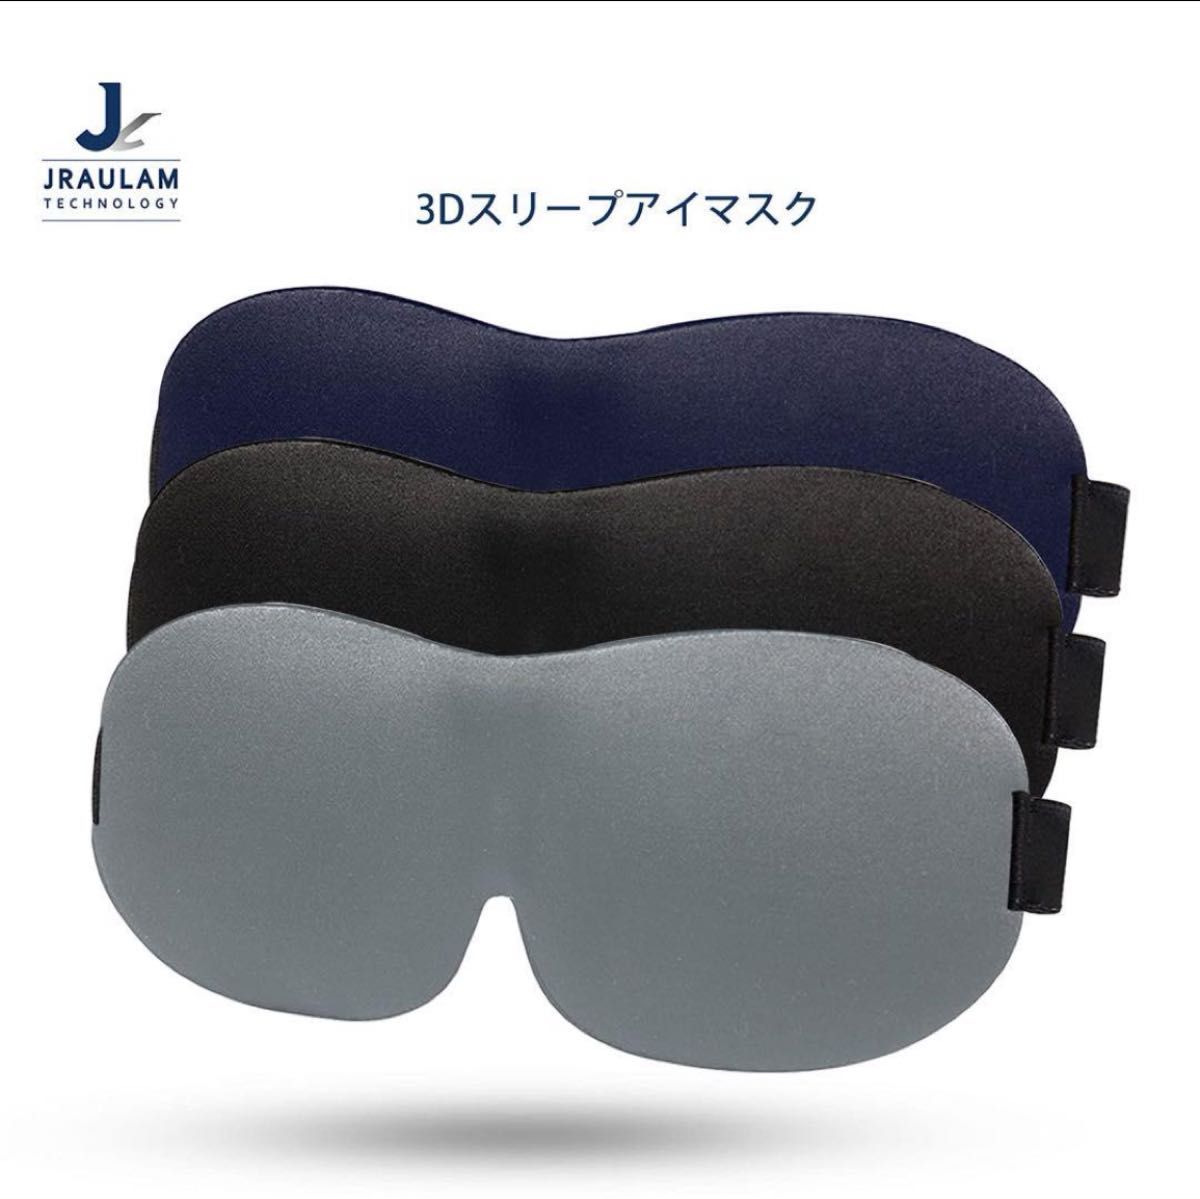 アイマスク 立体型 軽量 遮光 安眠マスク 柔らかい 圧迫感なし グレー 睡眠 仮眠 遮光 瞑想 旅行用3D